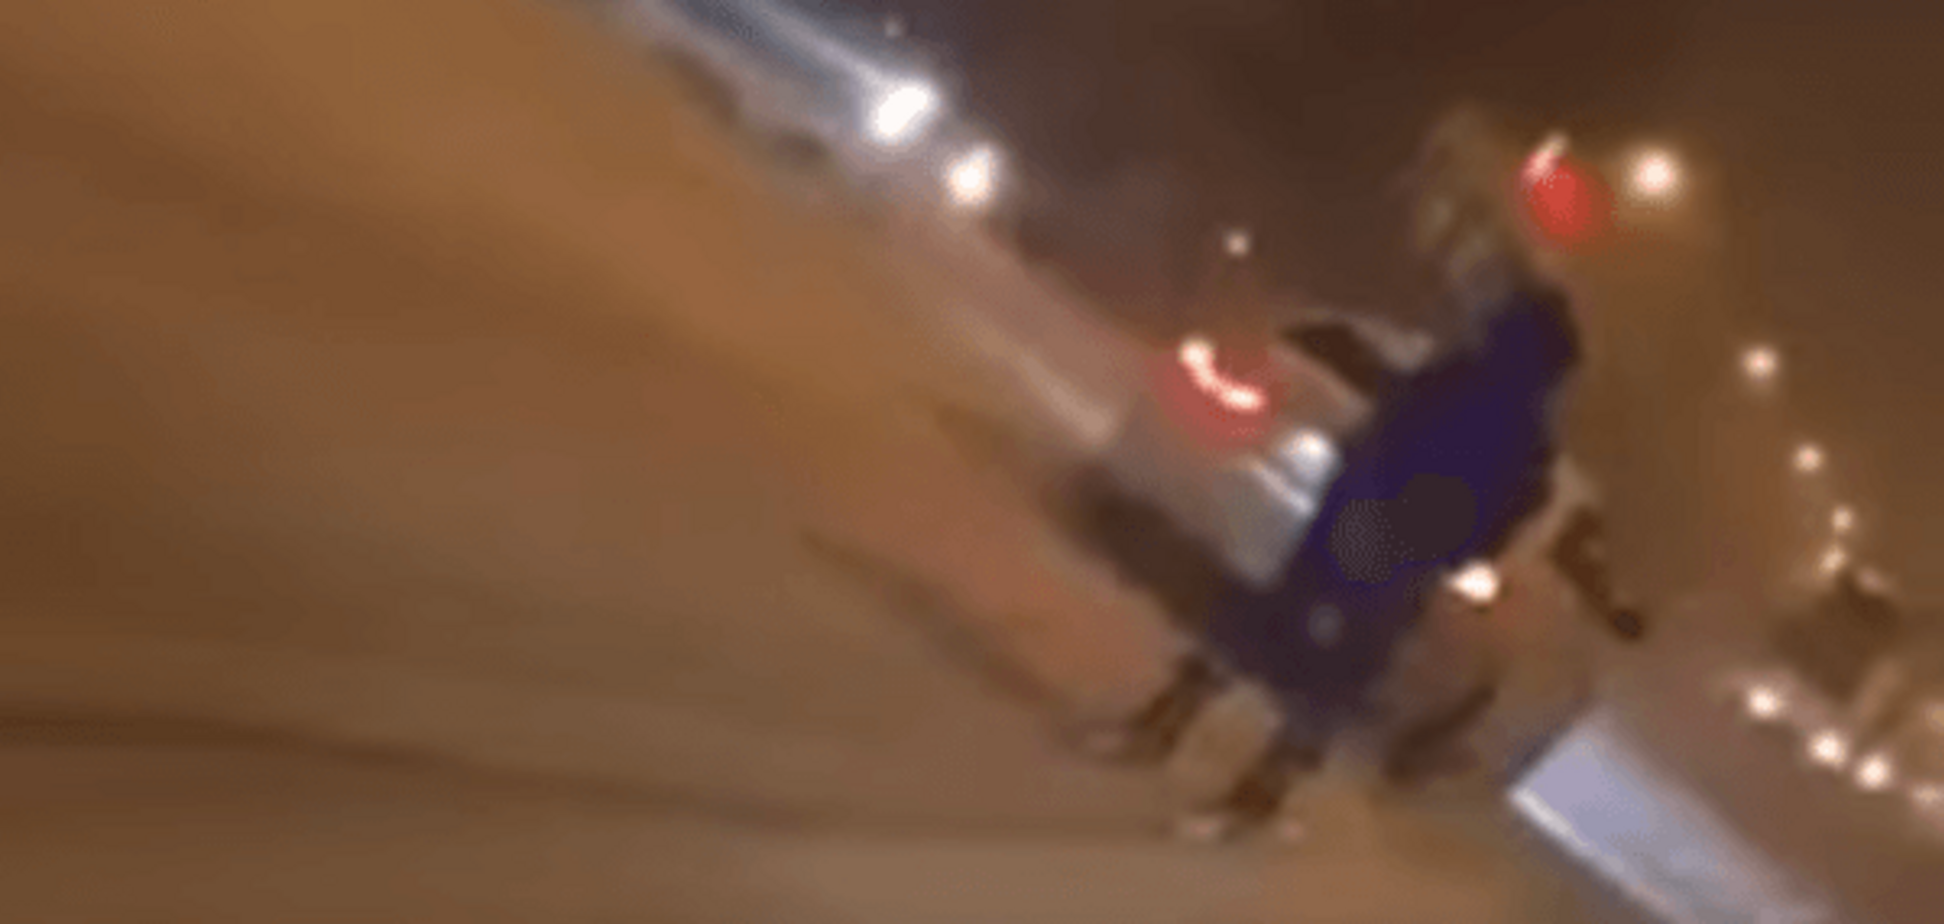 'ДНР'-экстрим: в центре Донецка заметили лыжника, мчащего за автомобилем. Видеофакт